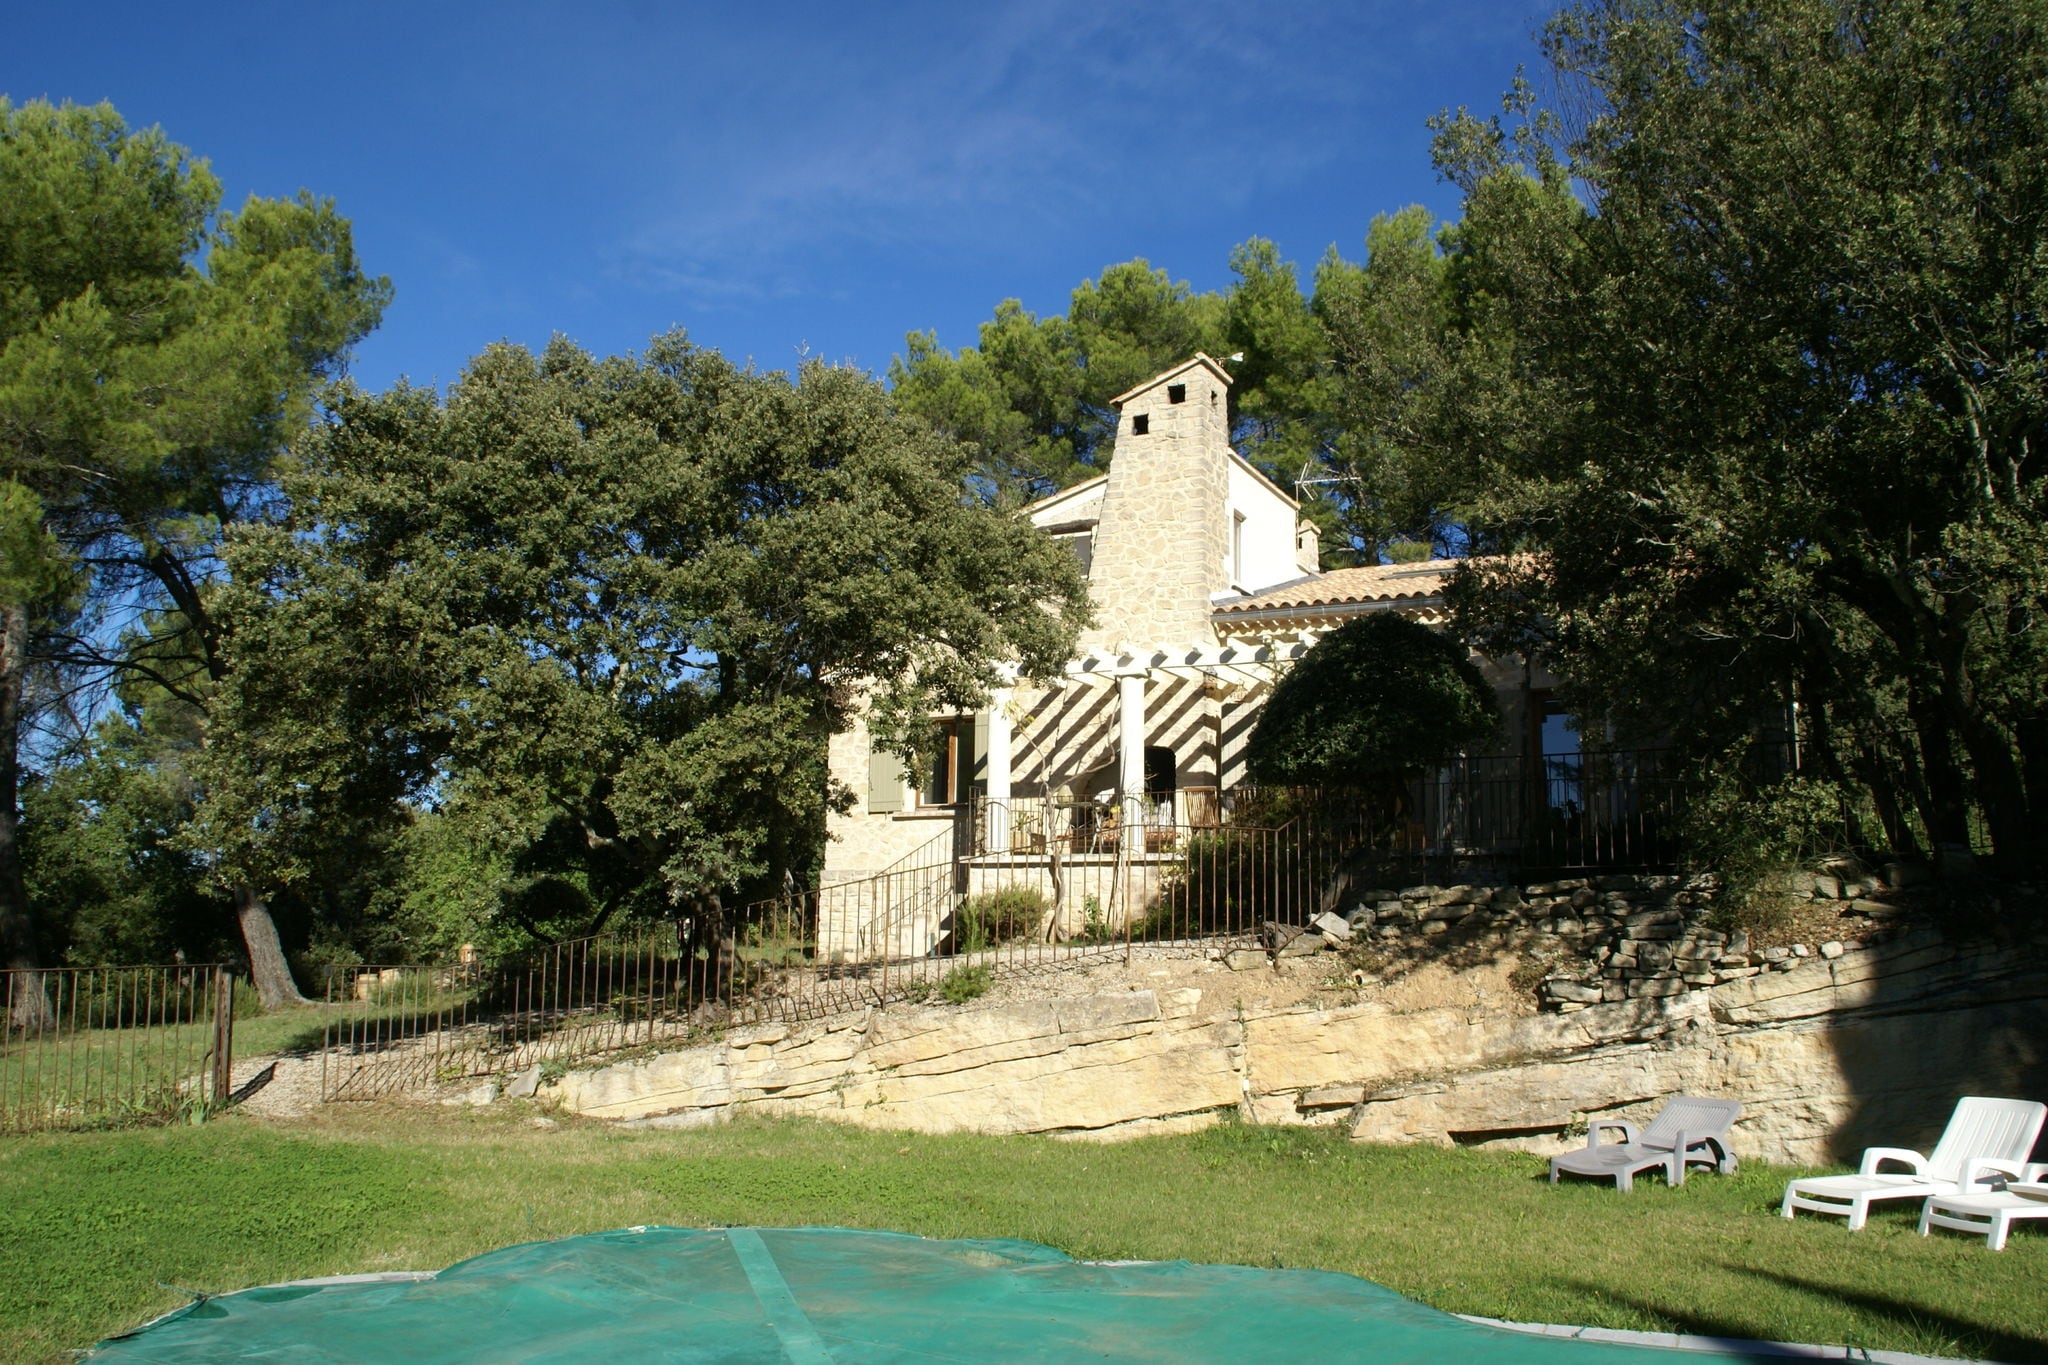 Lieflijk vakantiehuis met een heerlijke, omheinde grote tuin en omheind zwembad.